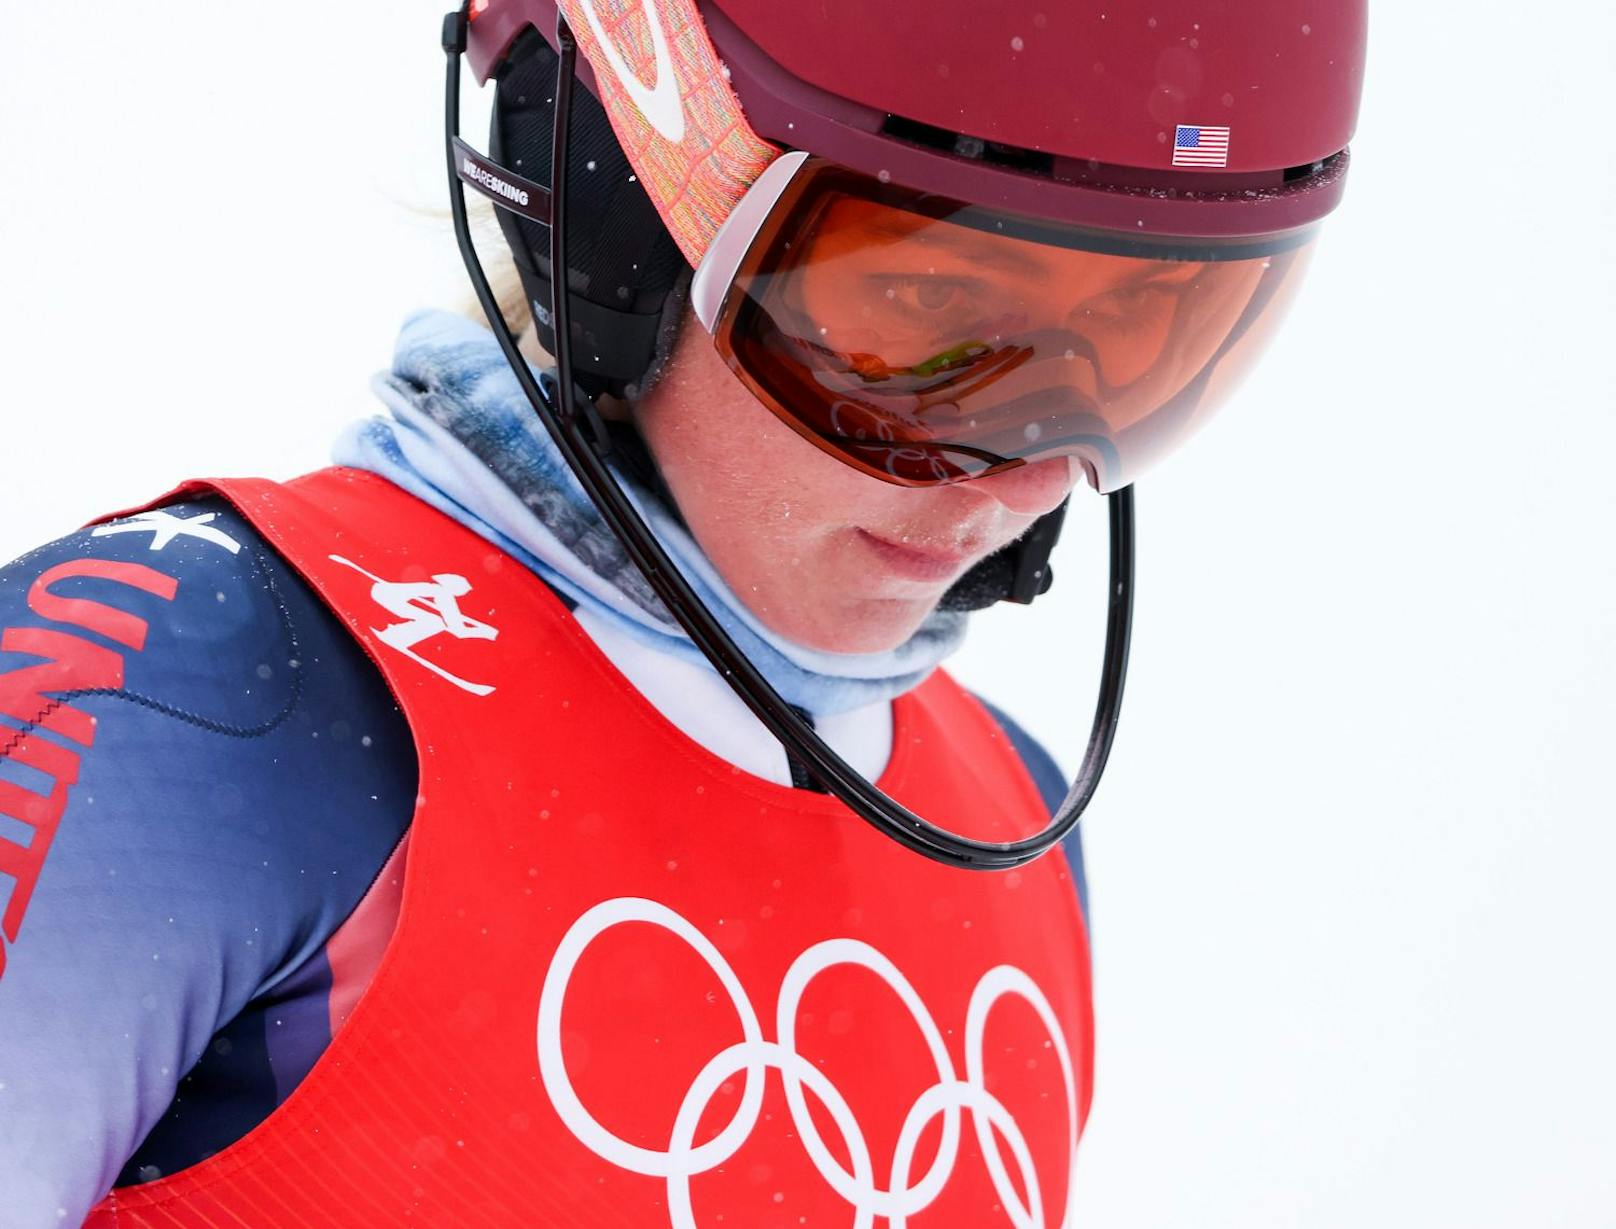 Ski-Star Shiffrin enthüllt brutale Hass-Nachrichten